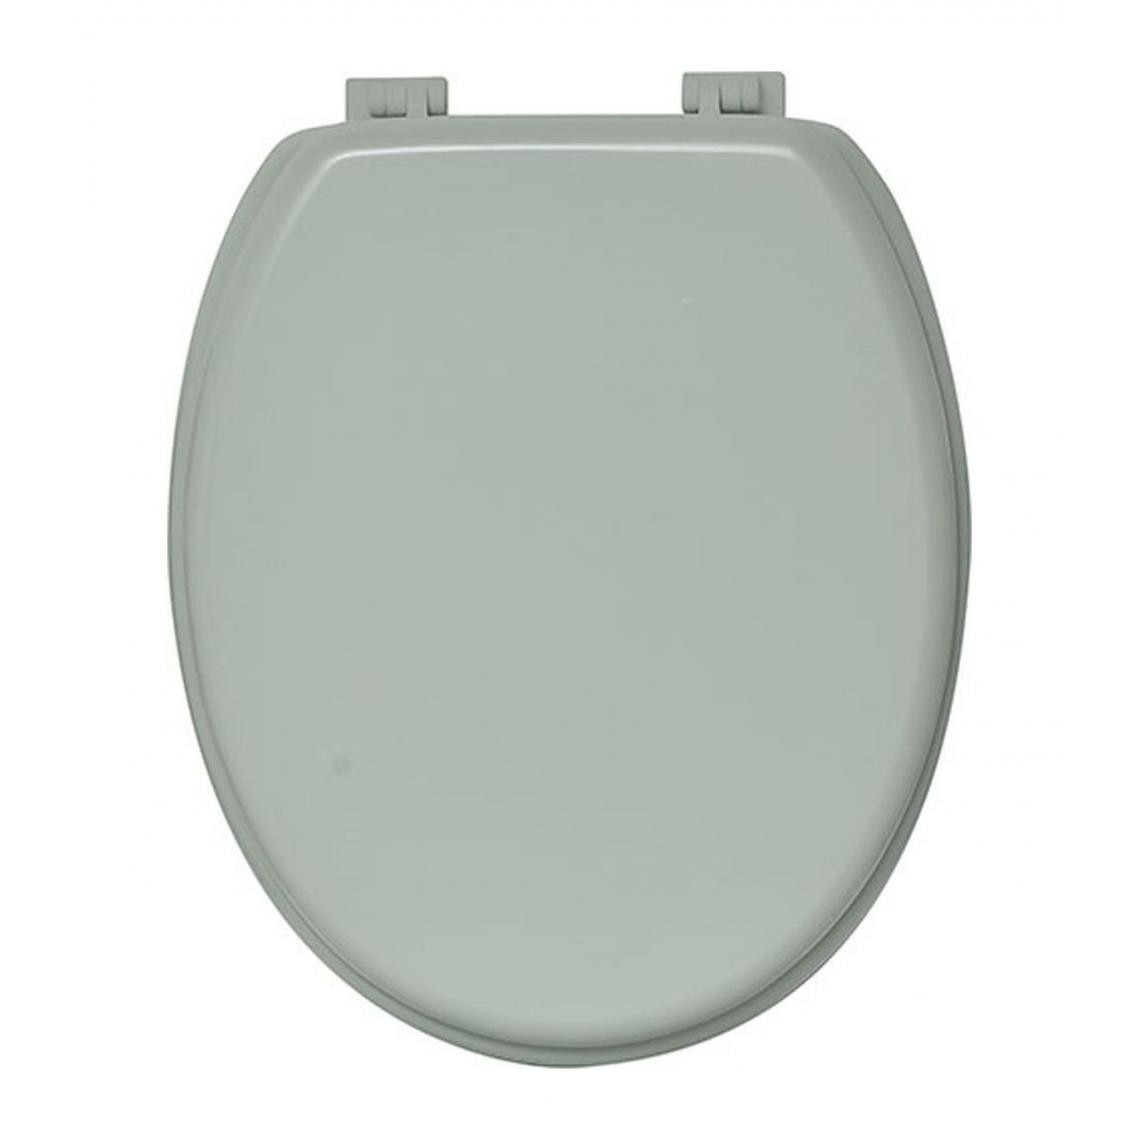 Tendance - TENDANCE - Abattant WC en Bois Vert amande avec kit de fixation - Abattant WC